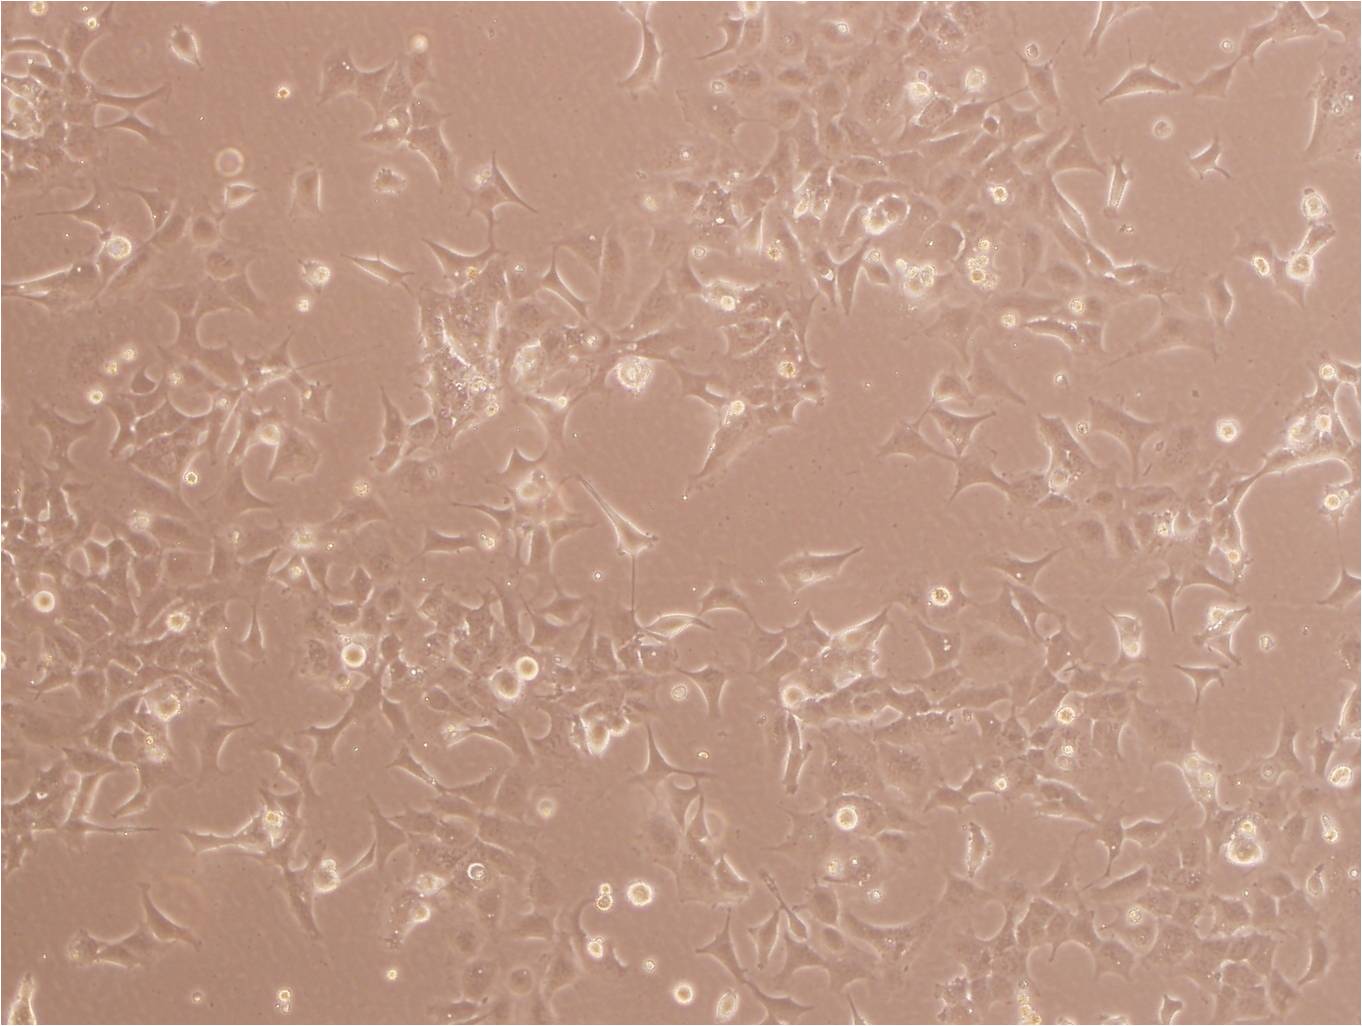 SK-N-MC Cell:人神经上皮瘤细胞系